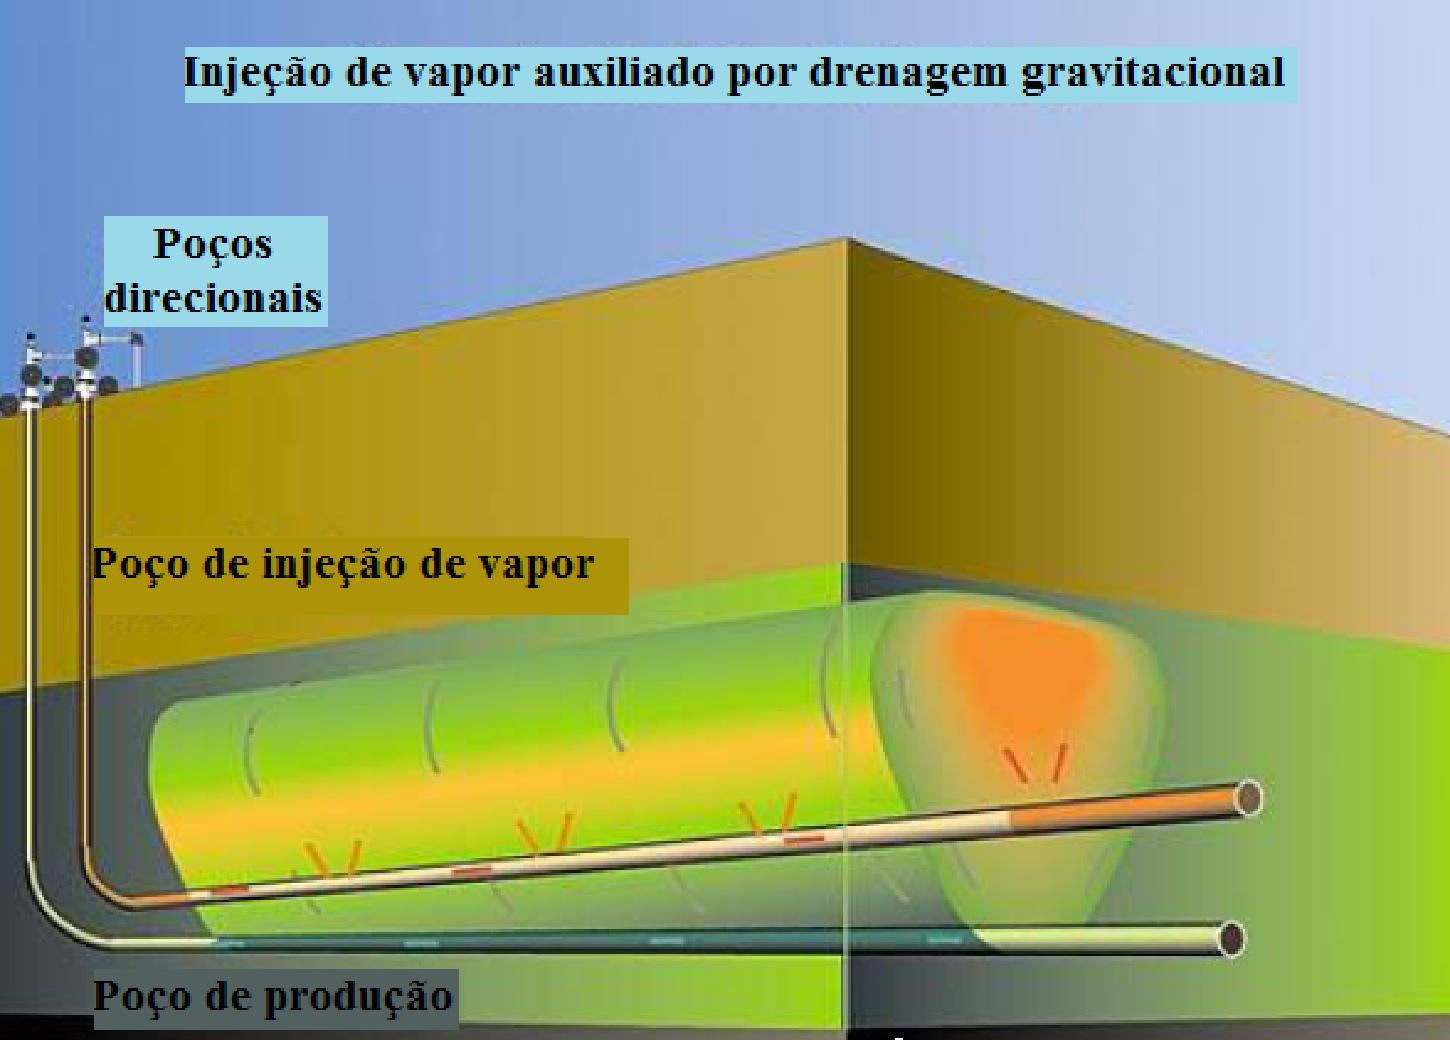 vapor é introduzido continuamente próximo ao fundo do reservatório pelo poço injetor que tende a subir. Em contraposição, o vapor condensado e o óleo aquecido tendem a descer.